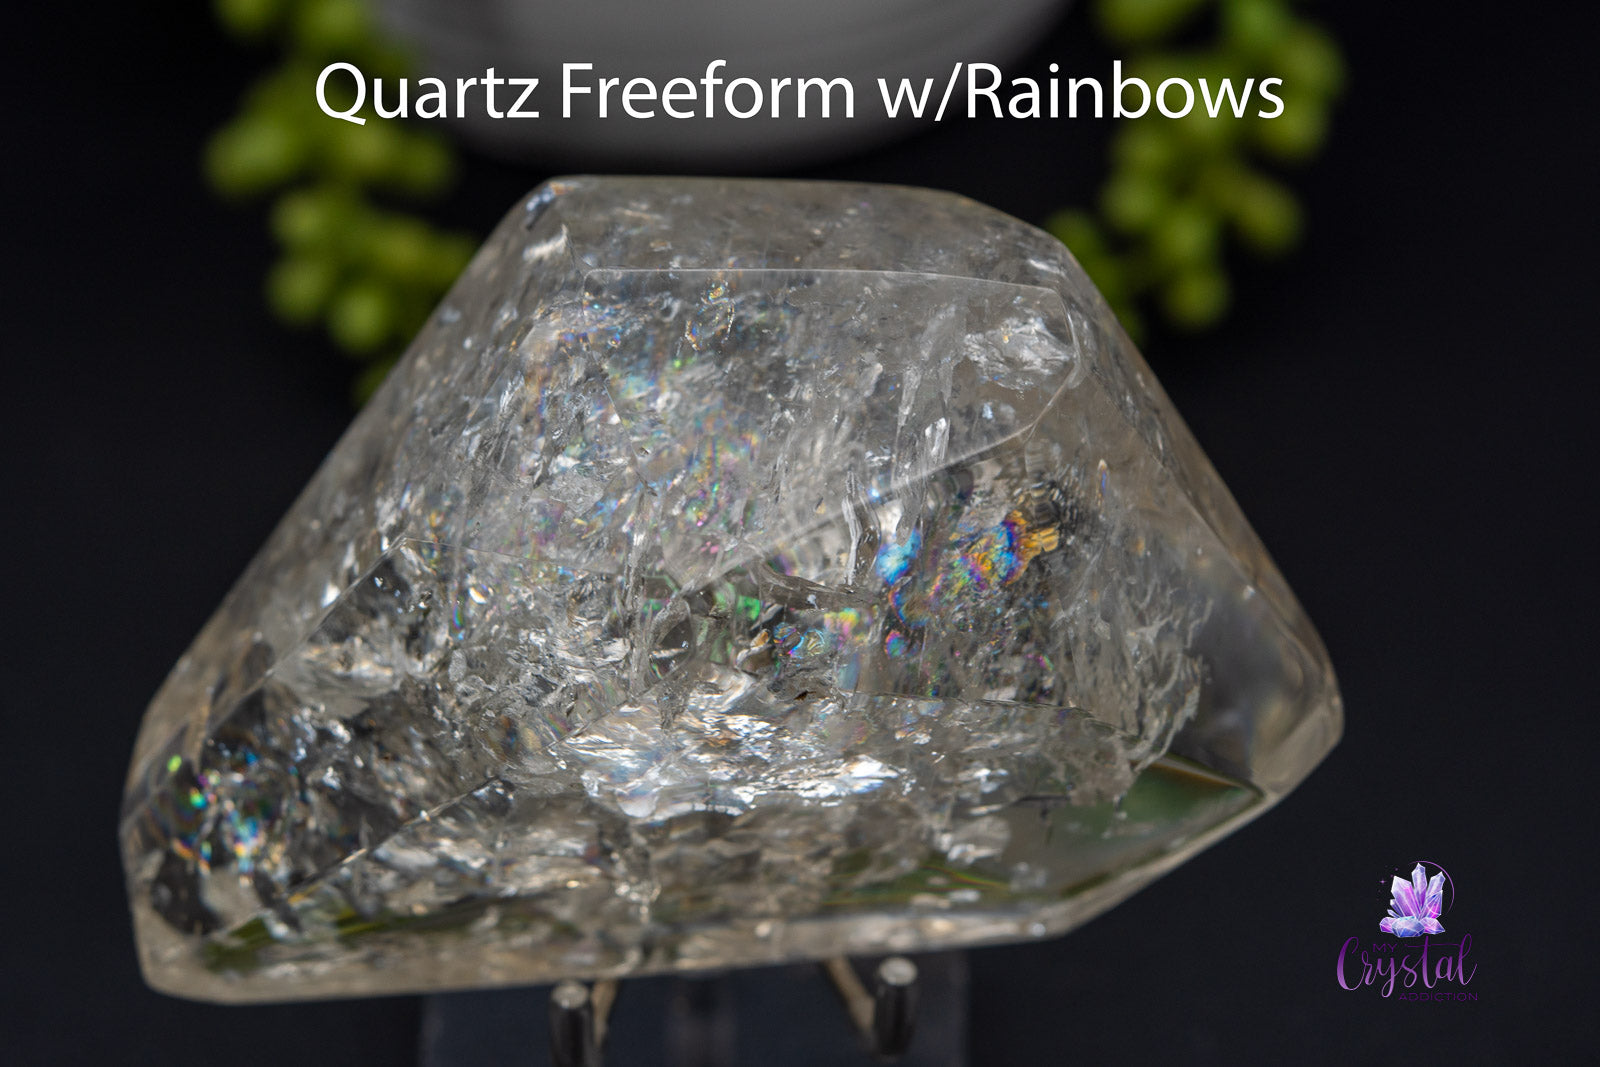 Quartz Freeform w/Rainbows 4.9" x 2.9"/124mm x 73mm - My Crystal Addiction